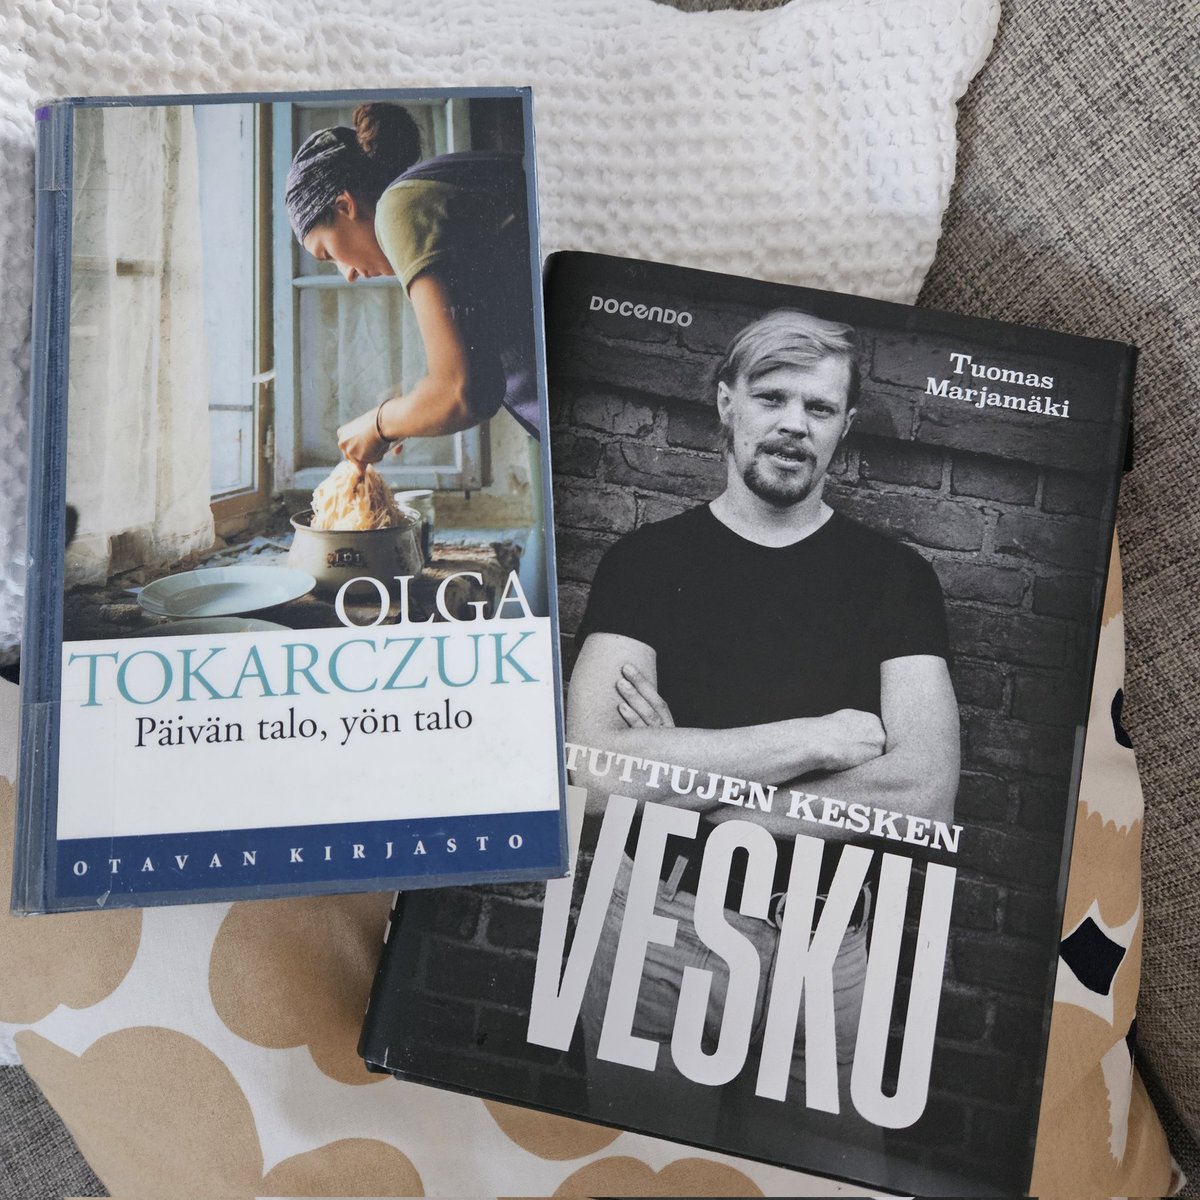 Hyvää Lukurauhan päivää 📚
Kaksi erilaista kirjaa tänään luennassa. Tokarczuk päivällä, ja vähän kevyempää Veskua illalla. 
#Lukupiiri